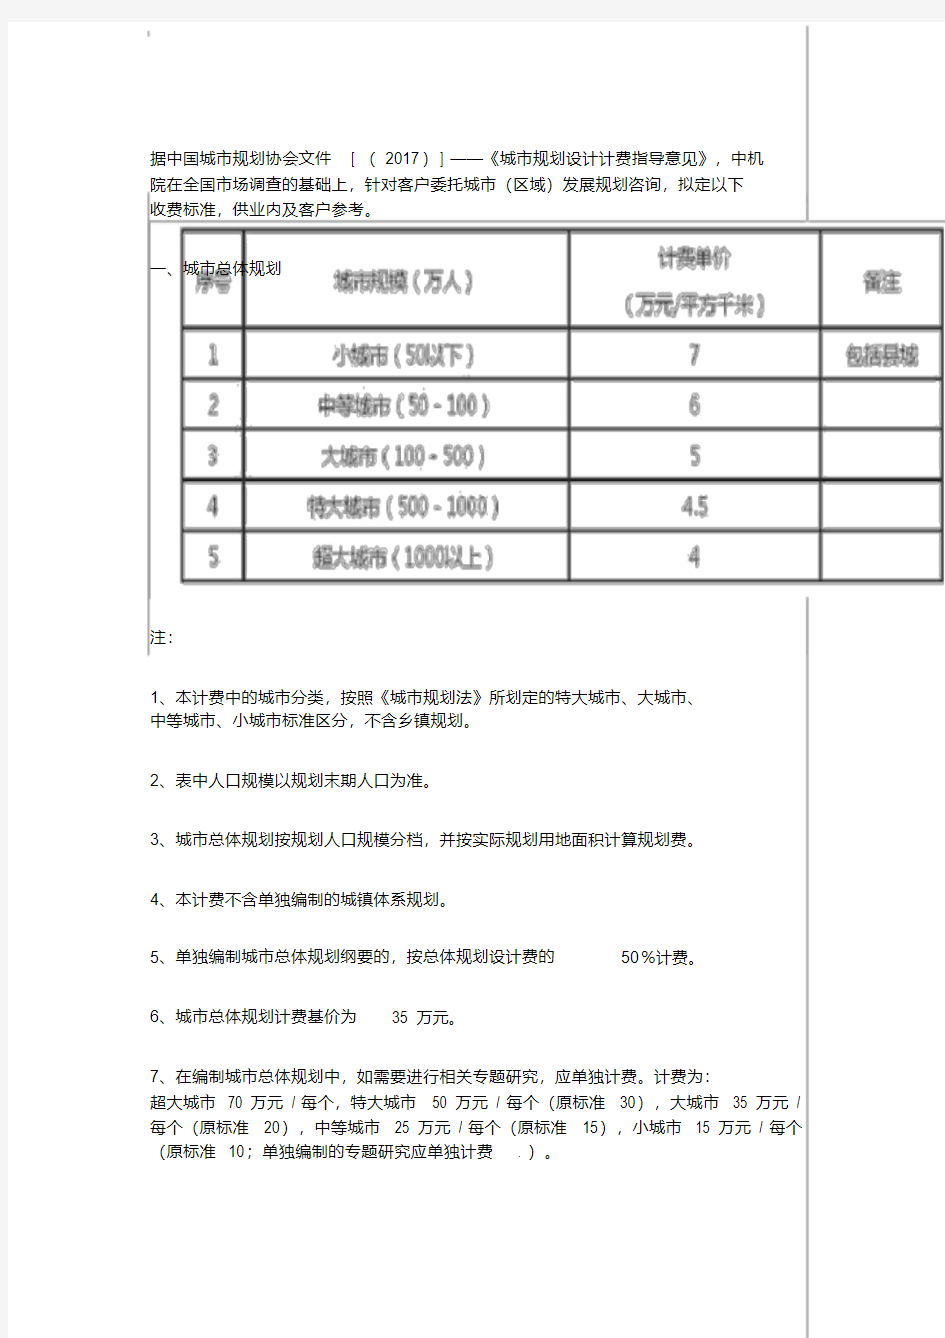 中国城市规划协会文件[(2017)]——《城市规划设计计费指导意见》(20191224085050)